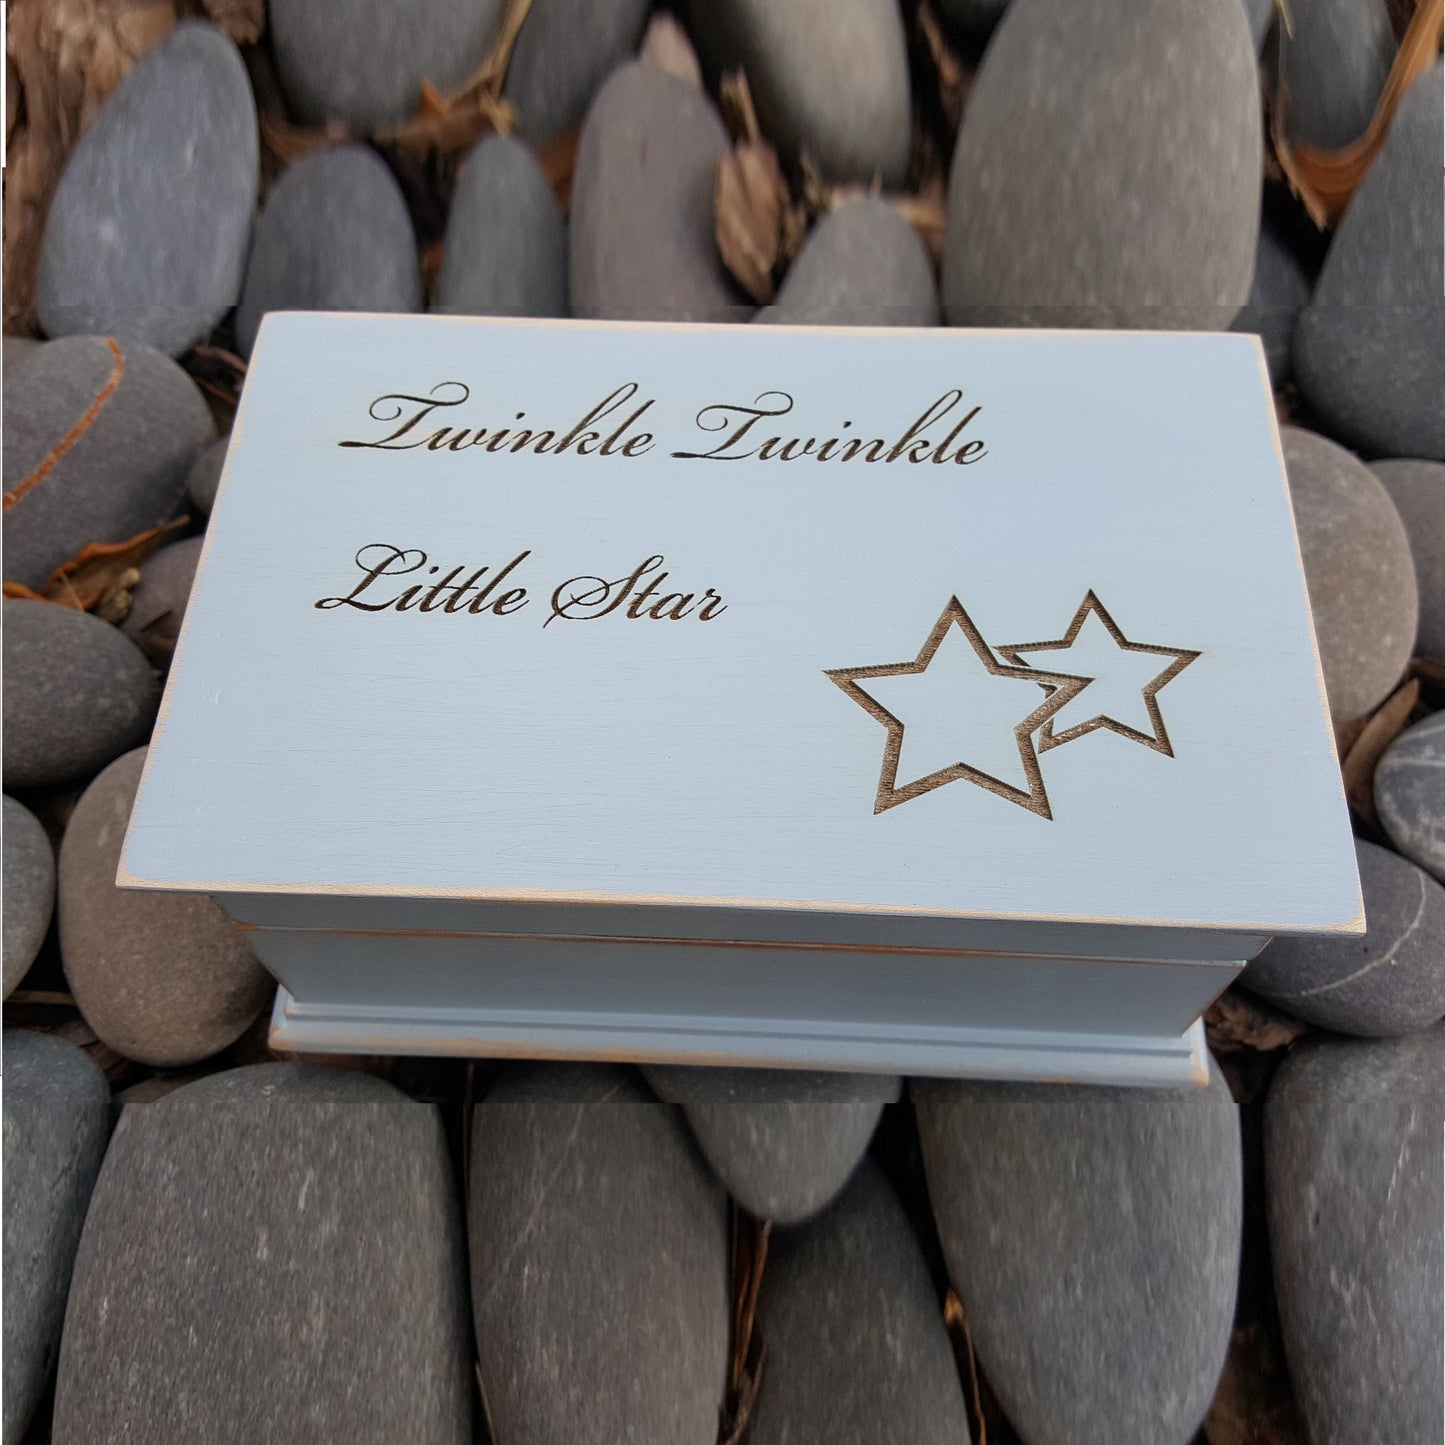 Twinkle Twinkle Little Star Engraved wooden jewelry box in light blue